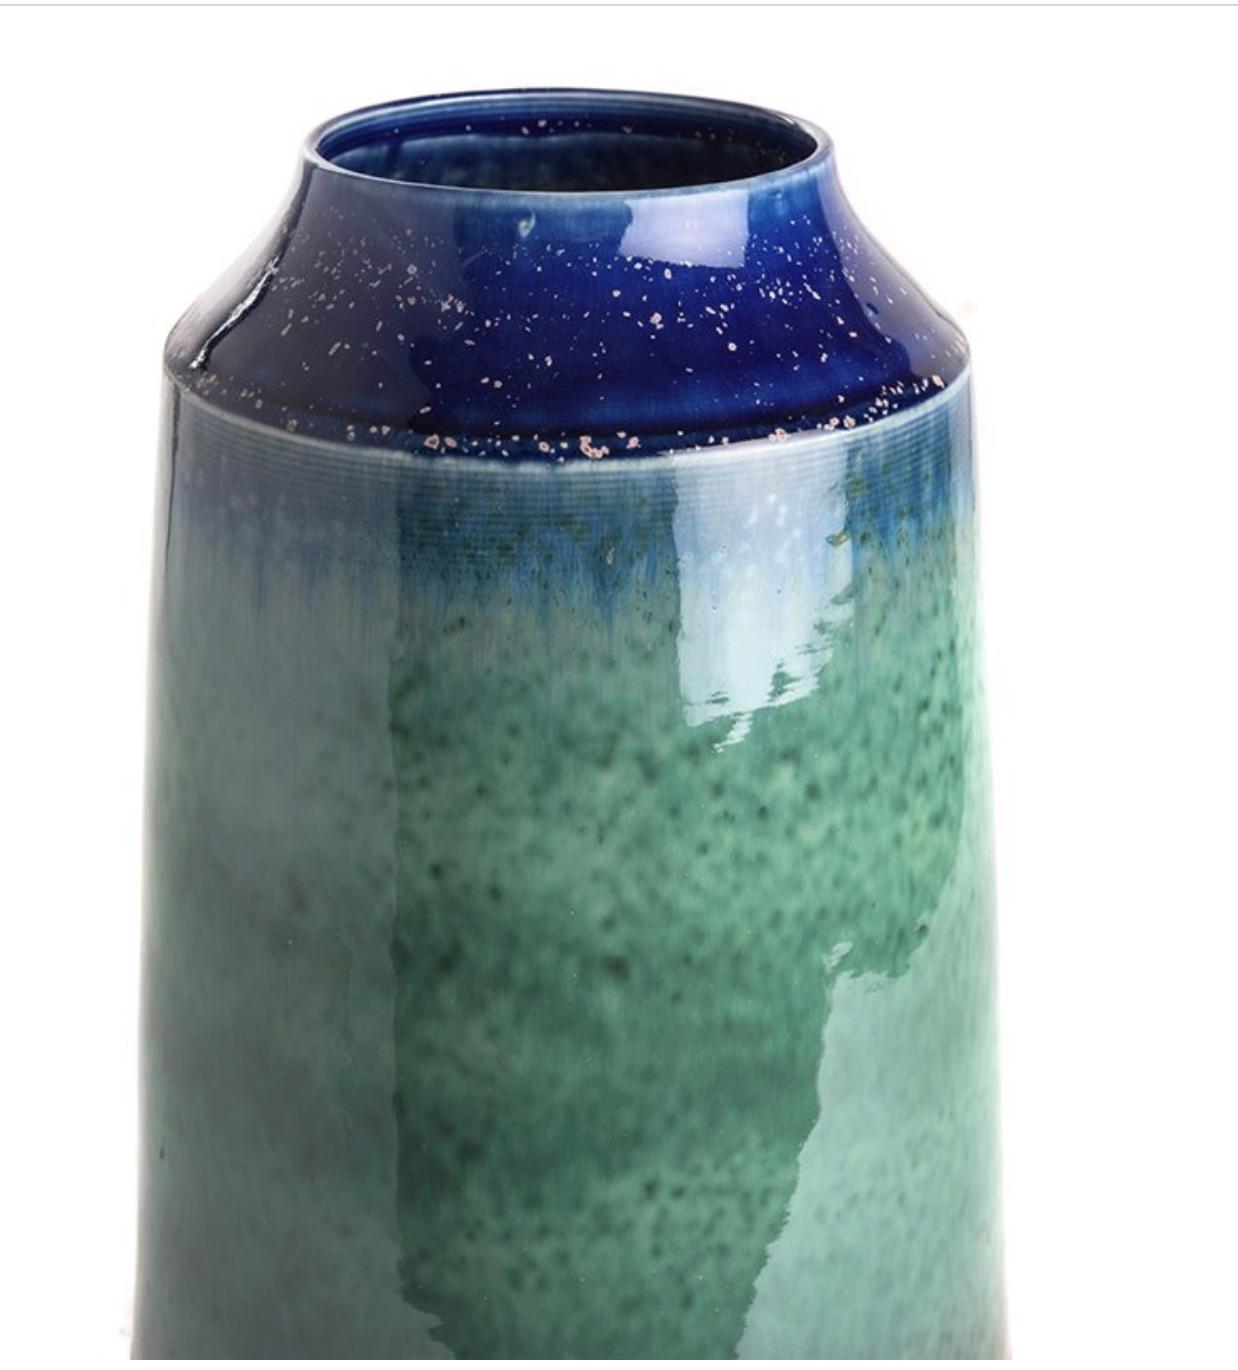 Vase contemporain en céramique chinoise de forme cylindrique.
Dessus fuselé de couleur bleu royal avec des nuances de jade.
S'adapte parfaitement au style plus grand S5586 et à la taille plus courte S5587.
    